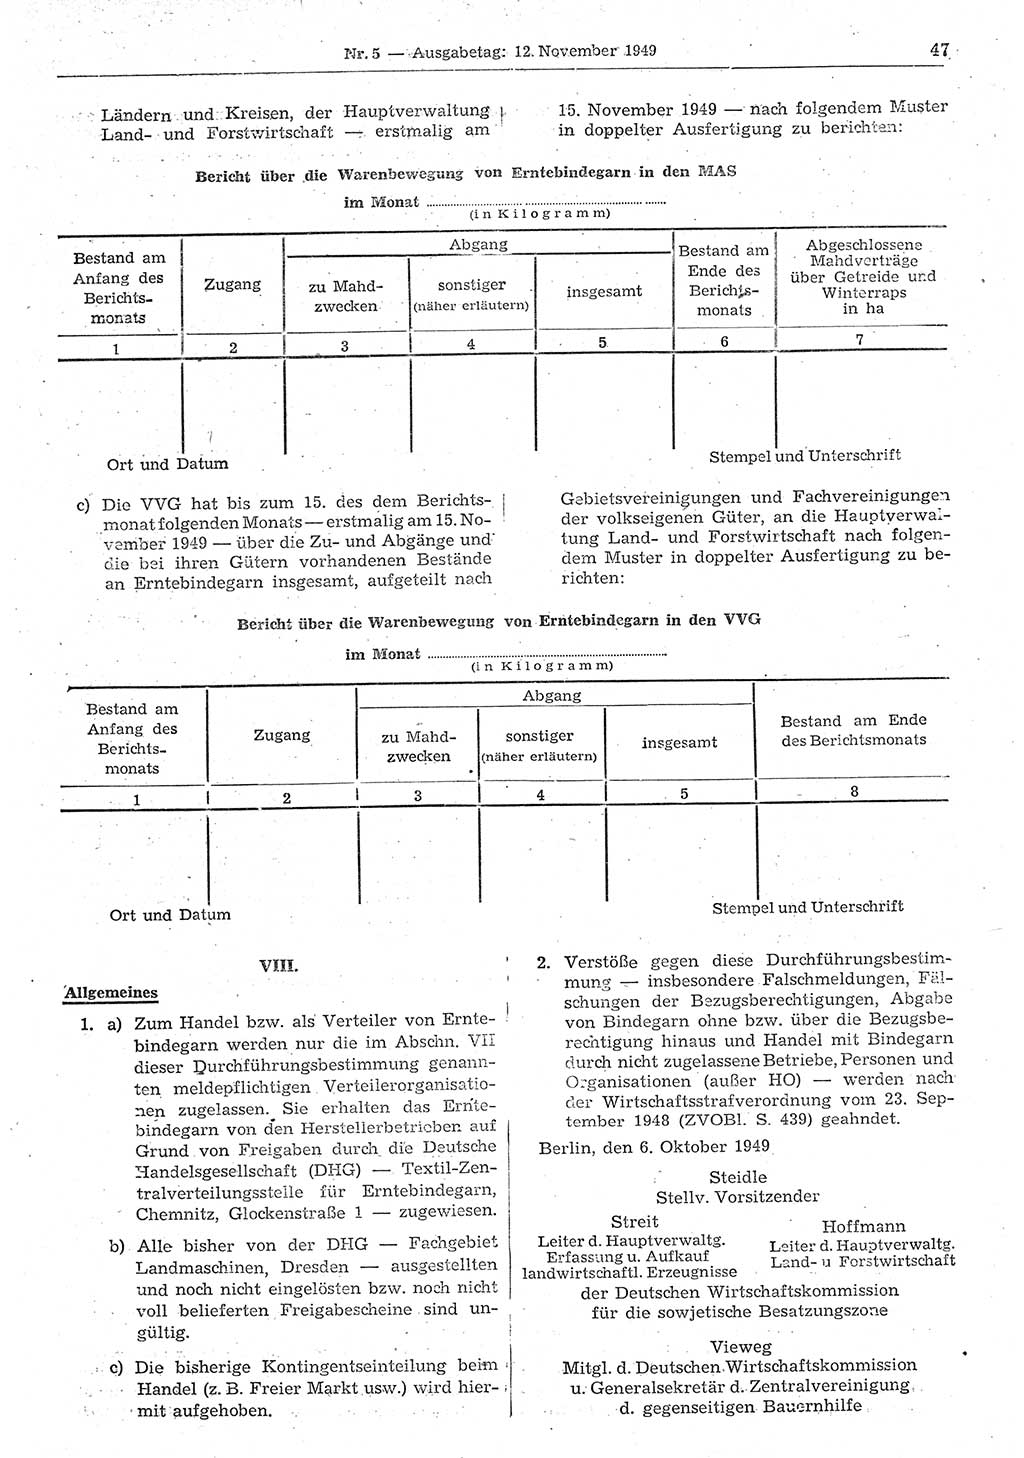 Gesetzblatt (GBl.) der Deutschen Demokratischen Republik (DDR) 1949, Seite 47 (GBl. DDR 1949, S. 47)